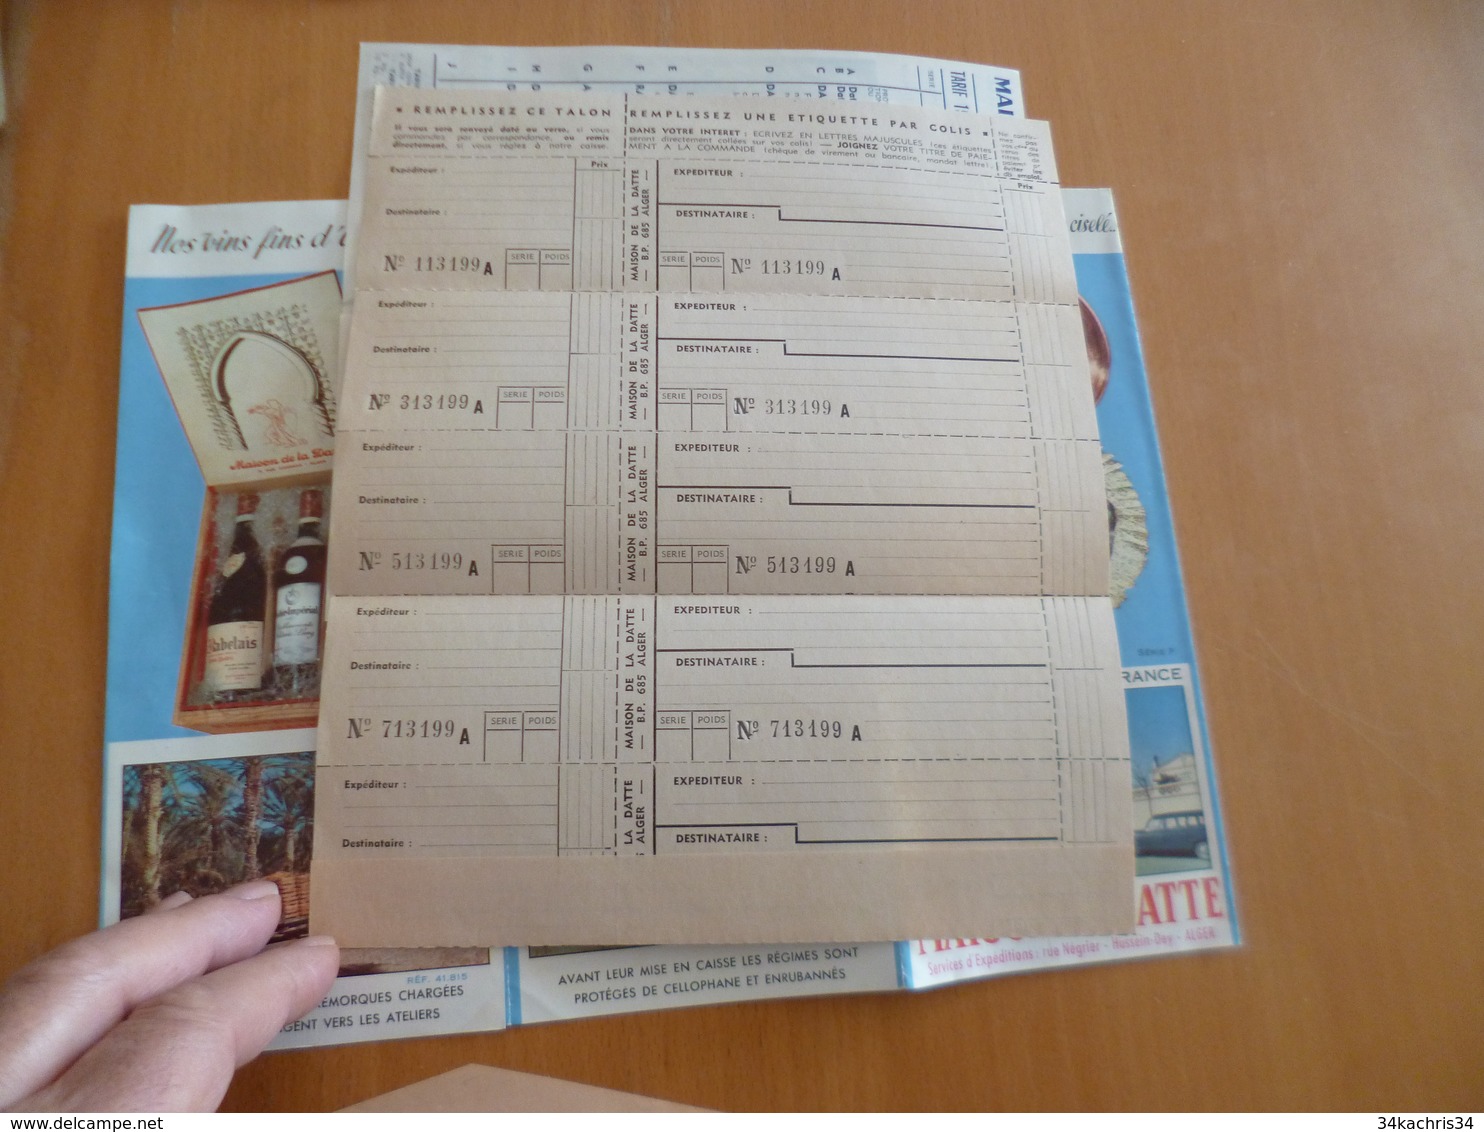 Lettre + Document Publicitaire La Maison De La Datte Alger 1960 - Alimentare